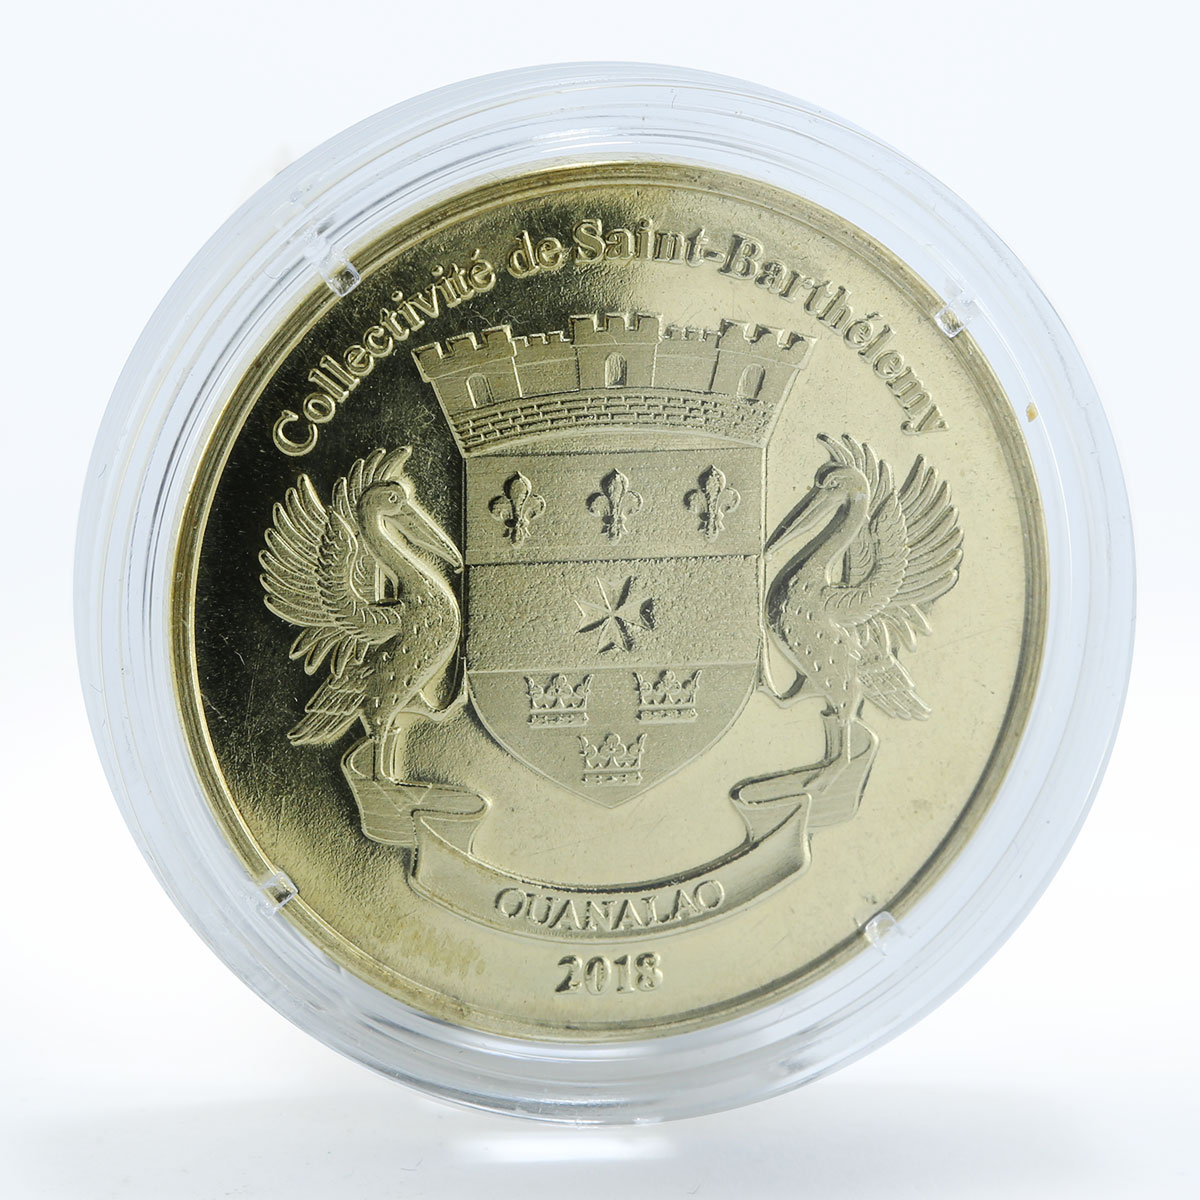 Saint Barthelemy 1 franc Akita Inu dog coin 2018